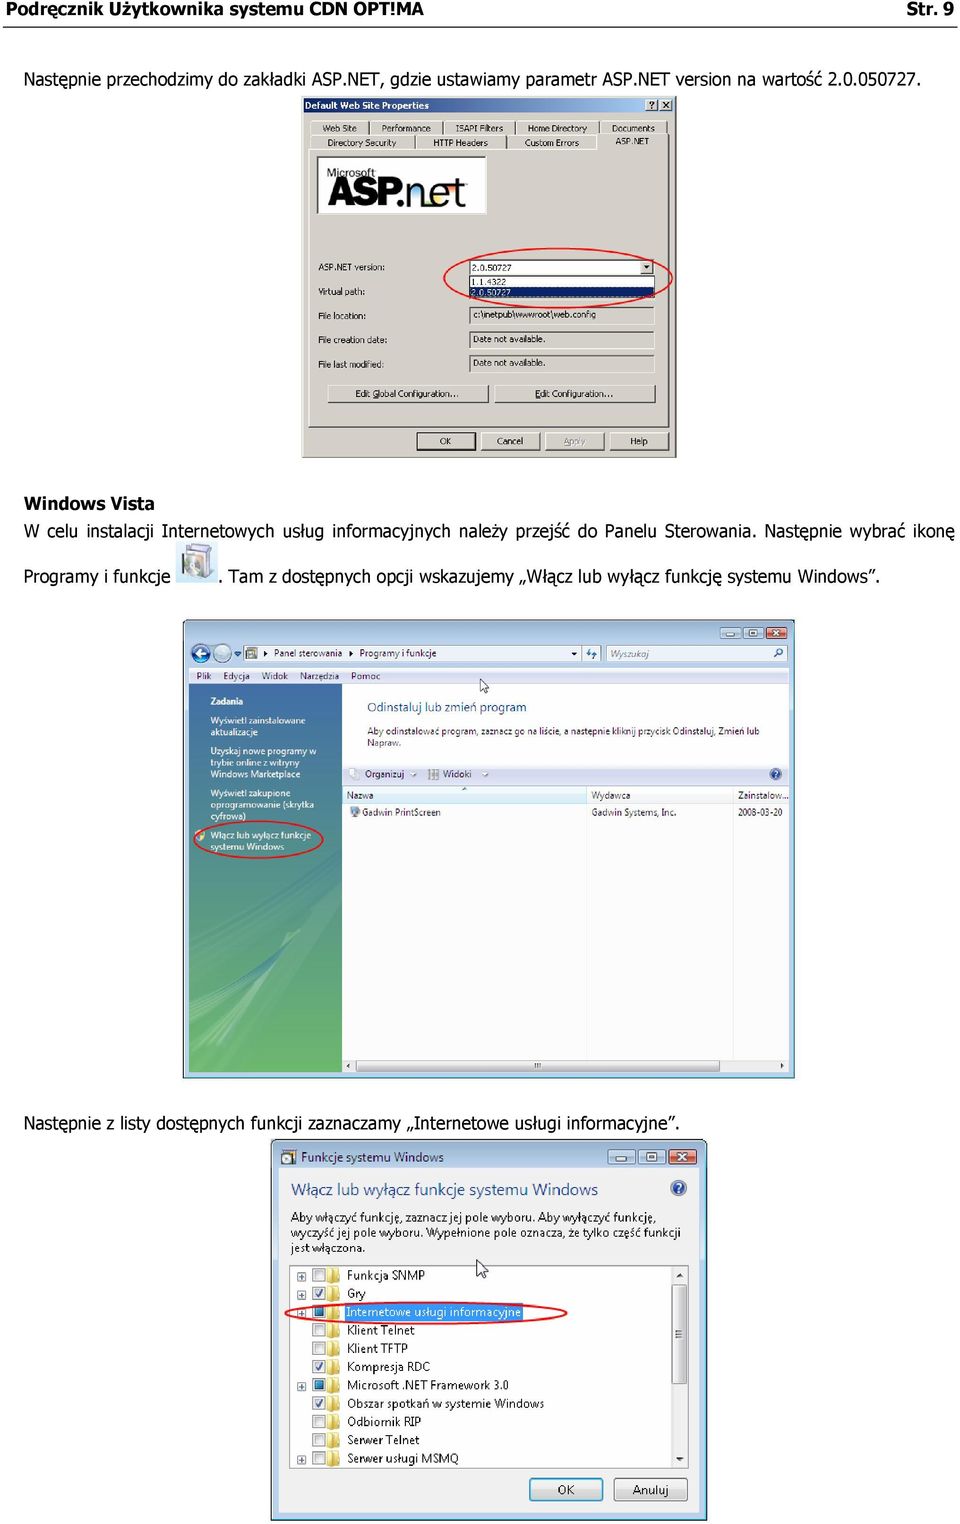 Windows Vista W celu instalacji Internetowych usług informacyjnych należy przejść do Panelu Sterowania.